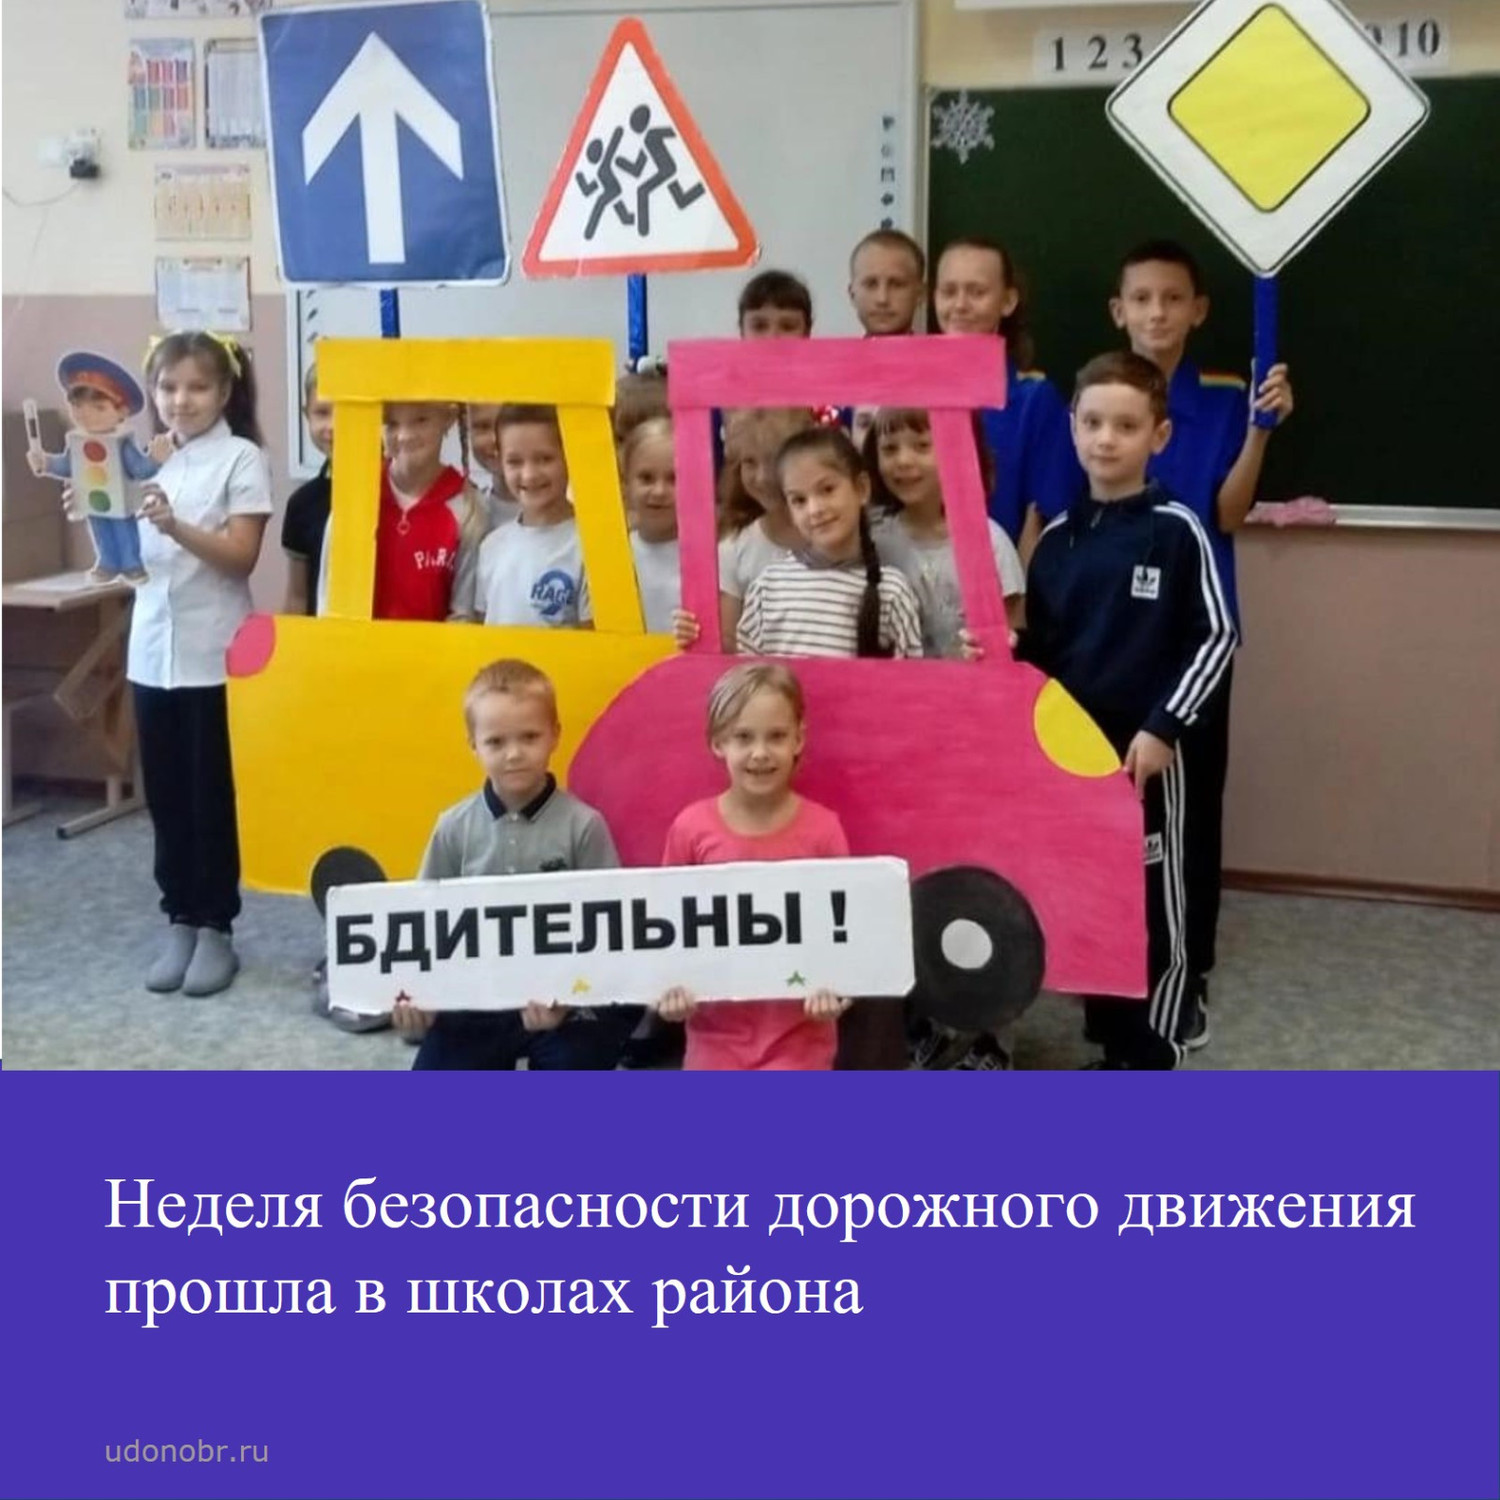 Неделя безопасности дорожного движения прошла в школах района